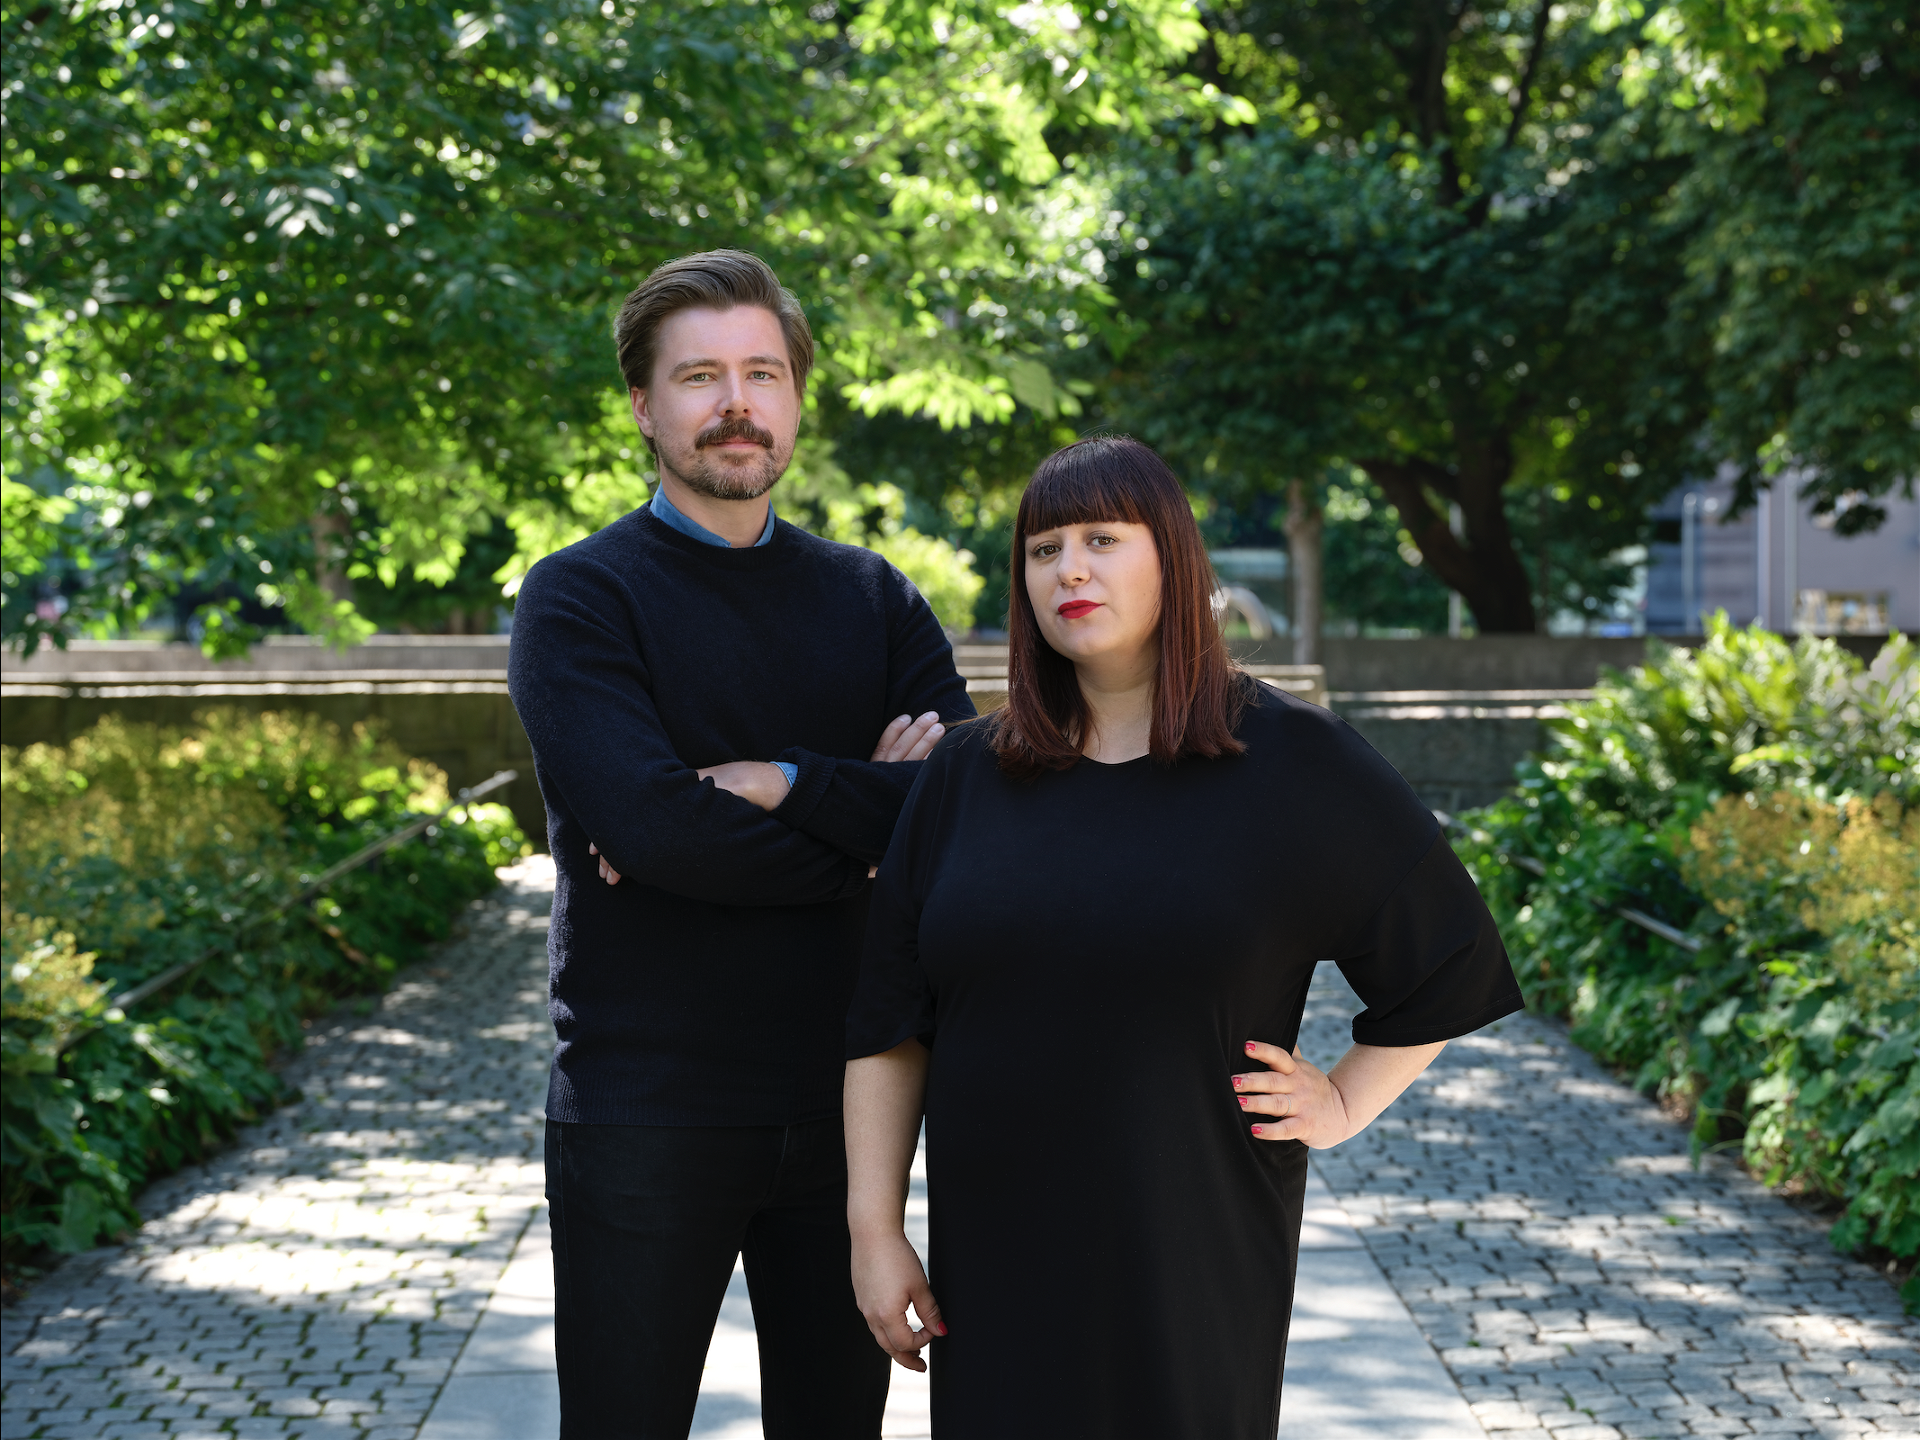 Karl Martinsson och Mira Hjort klädda i svart, utomhus med grönskande träd i bakgrunden.